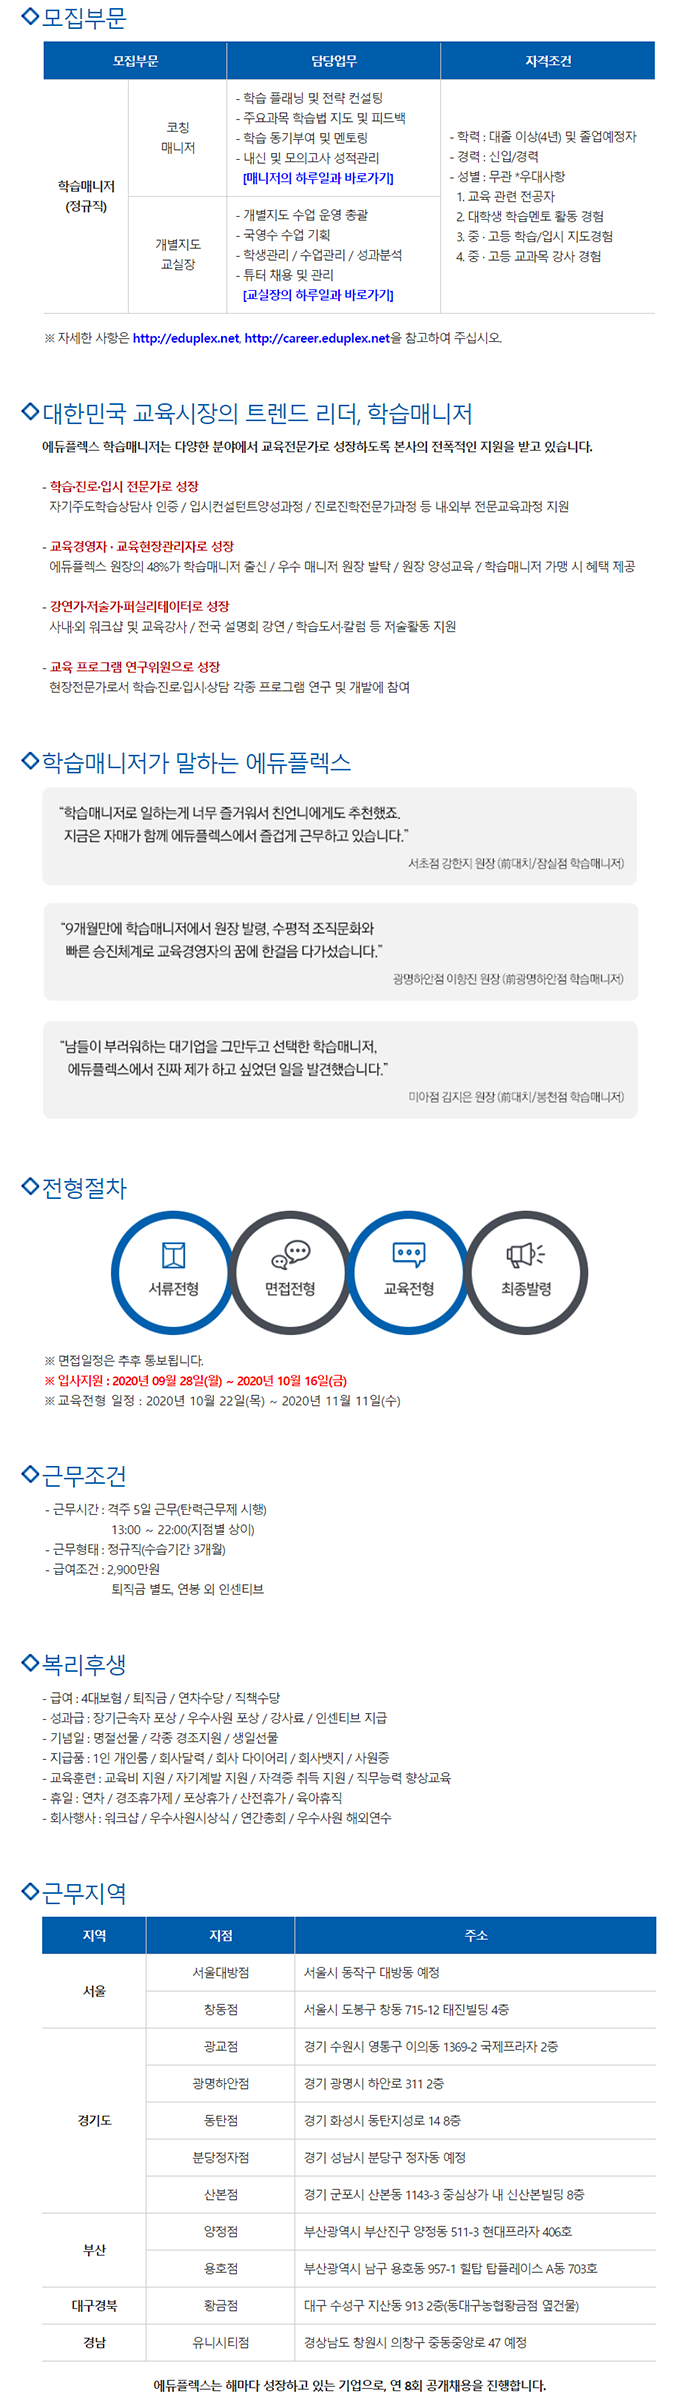 에듀플렉스 부문별 신입/경력 공개채용